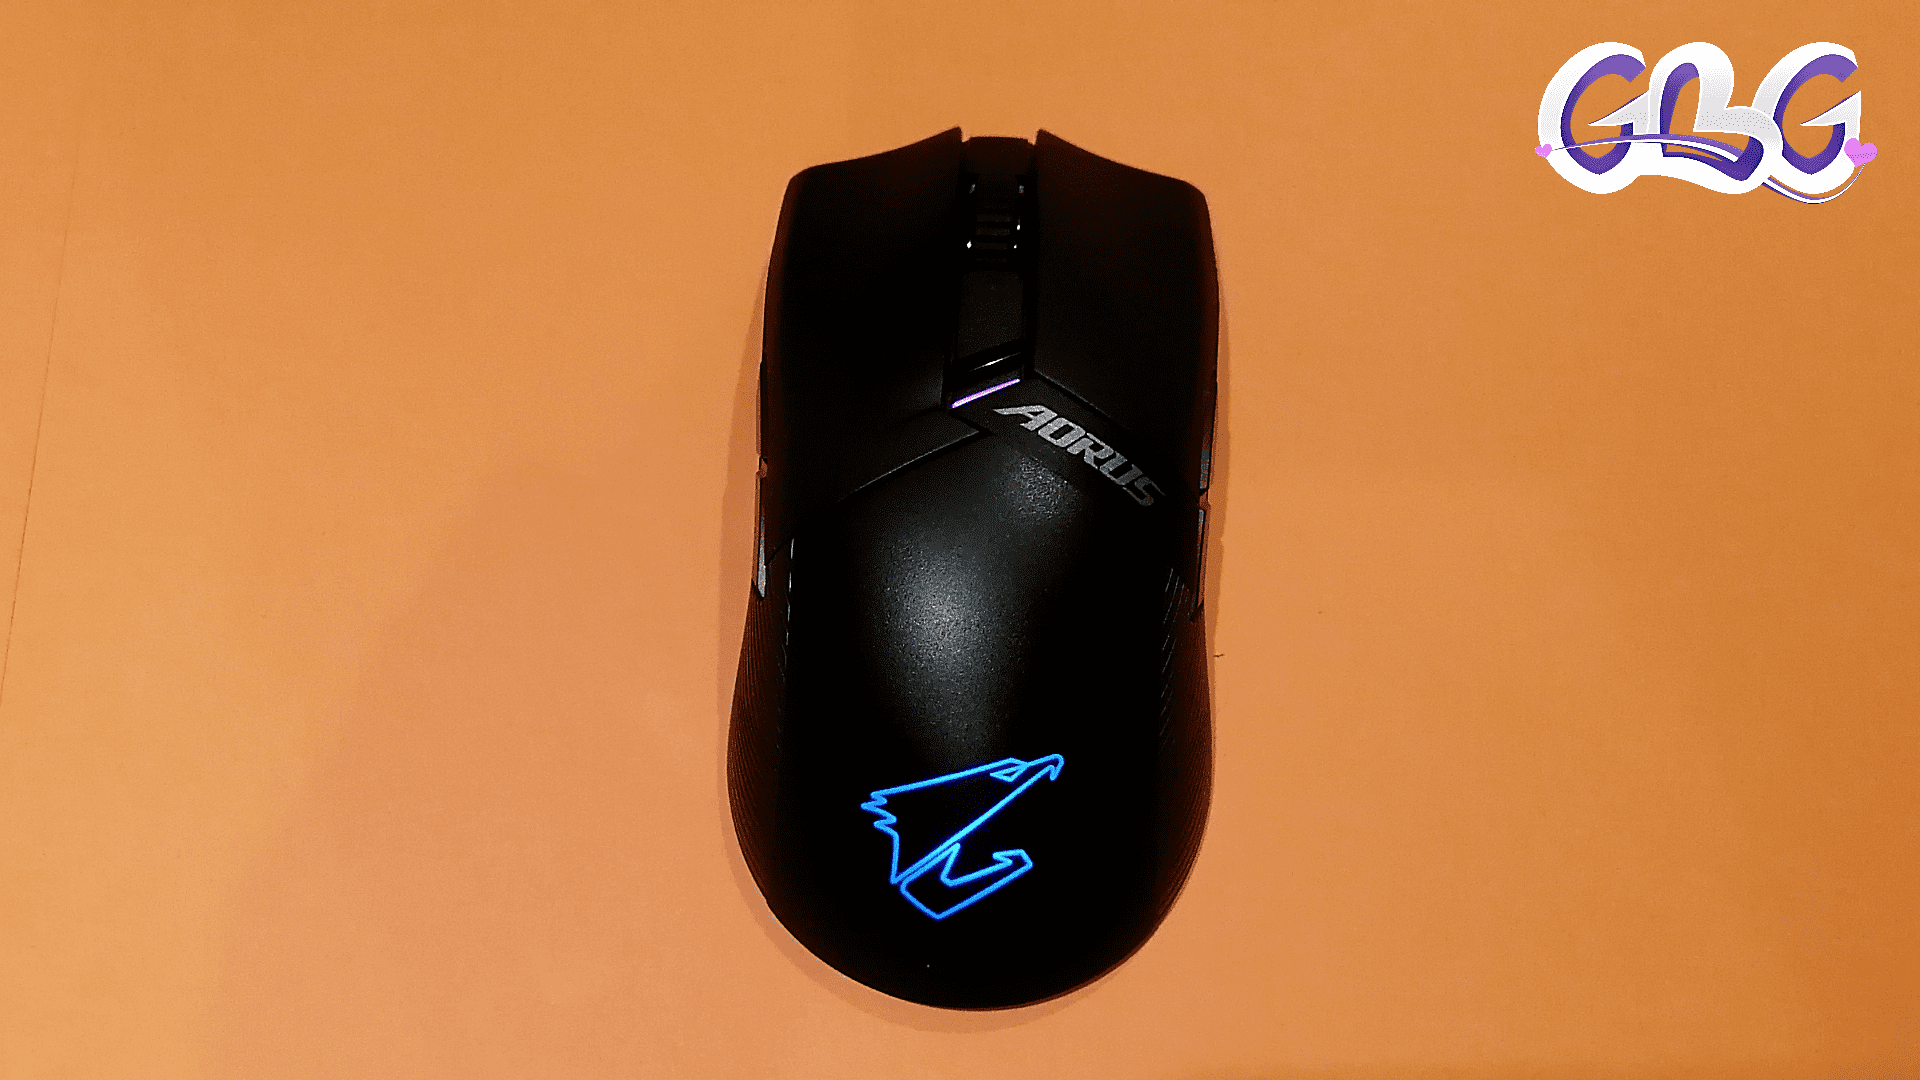 la souris est équipé de "LED RGB"